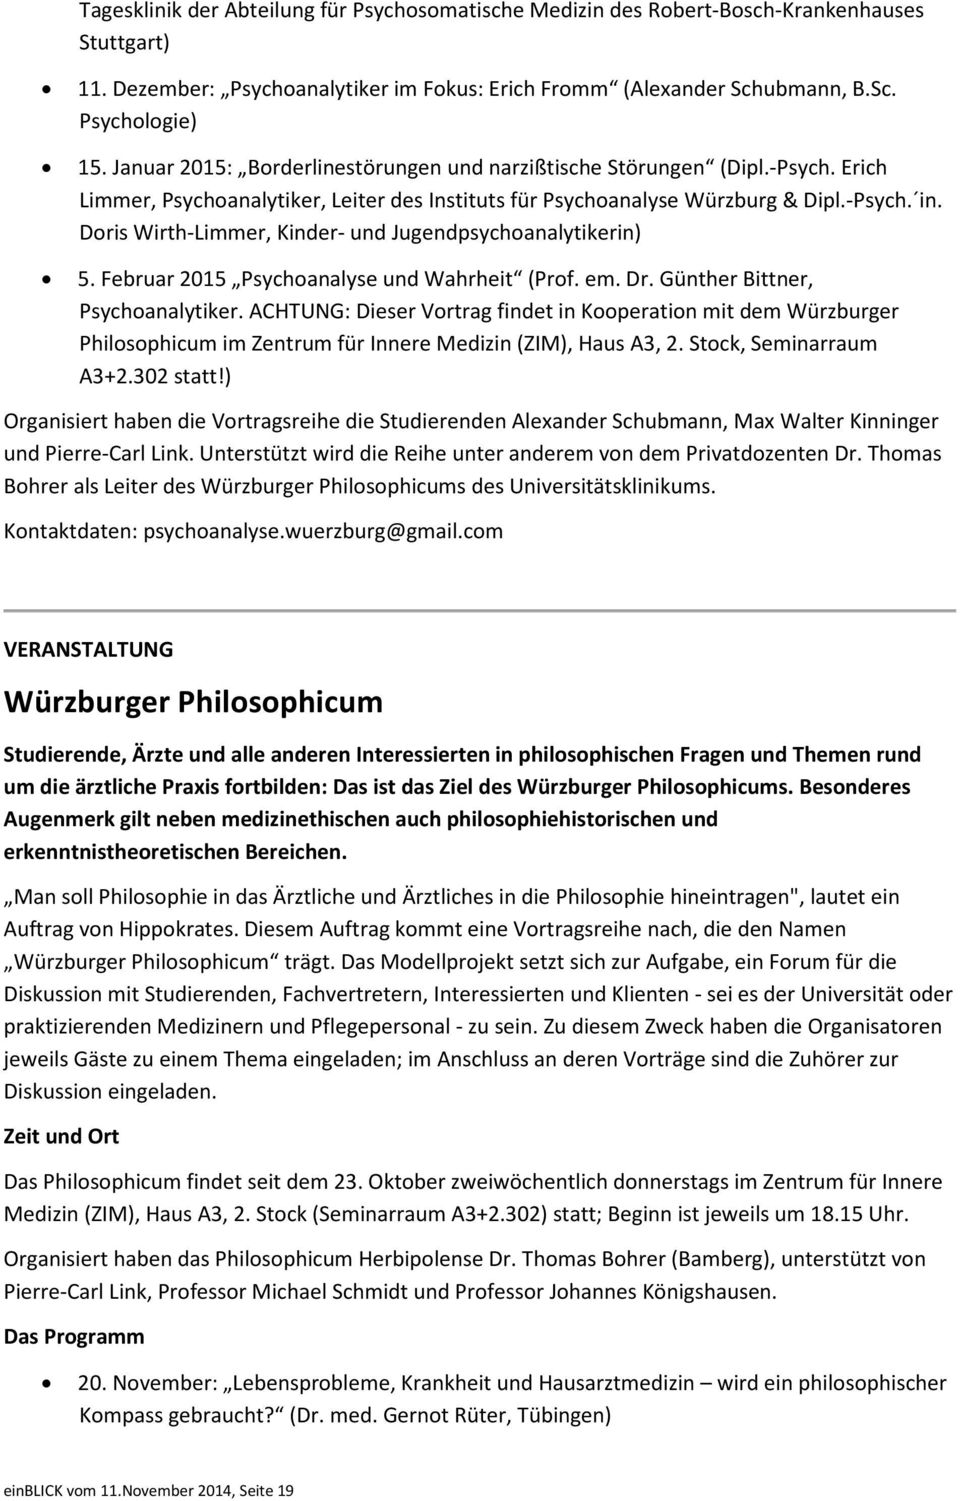 Doris Wirth-Limmer, Kinder- und Jugendpsychoanalytikerin) 5. Februar 2015 Psychoanalyse und Wahrheit (Prof. em. Dr. Günther Bittner, Psychoanalytiker.